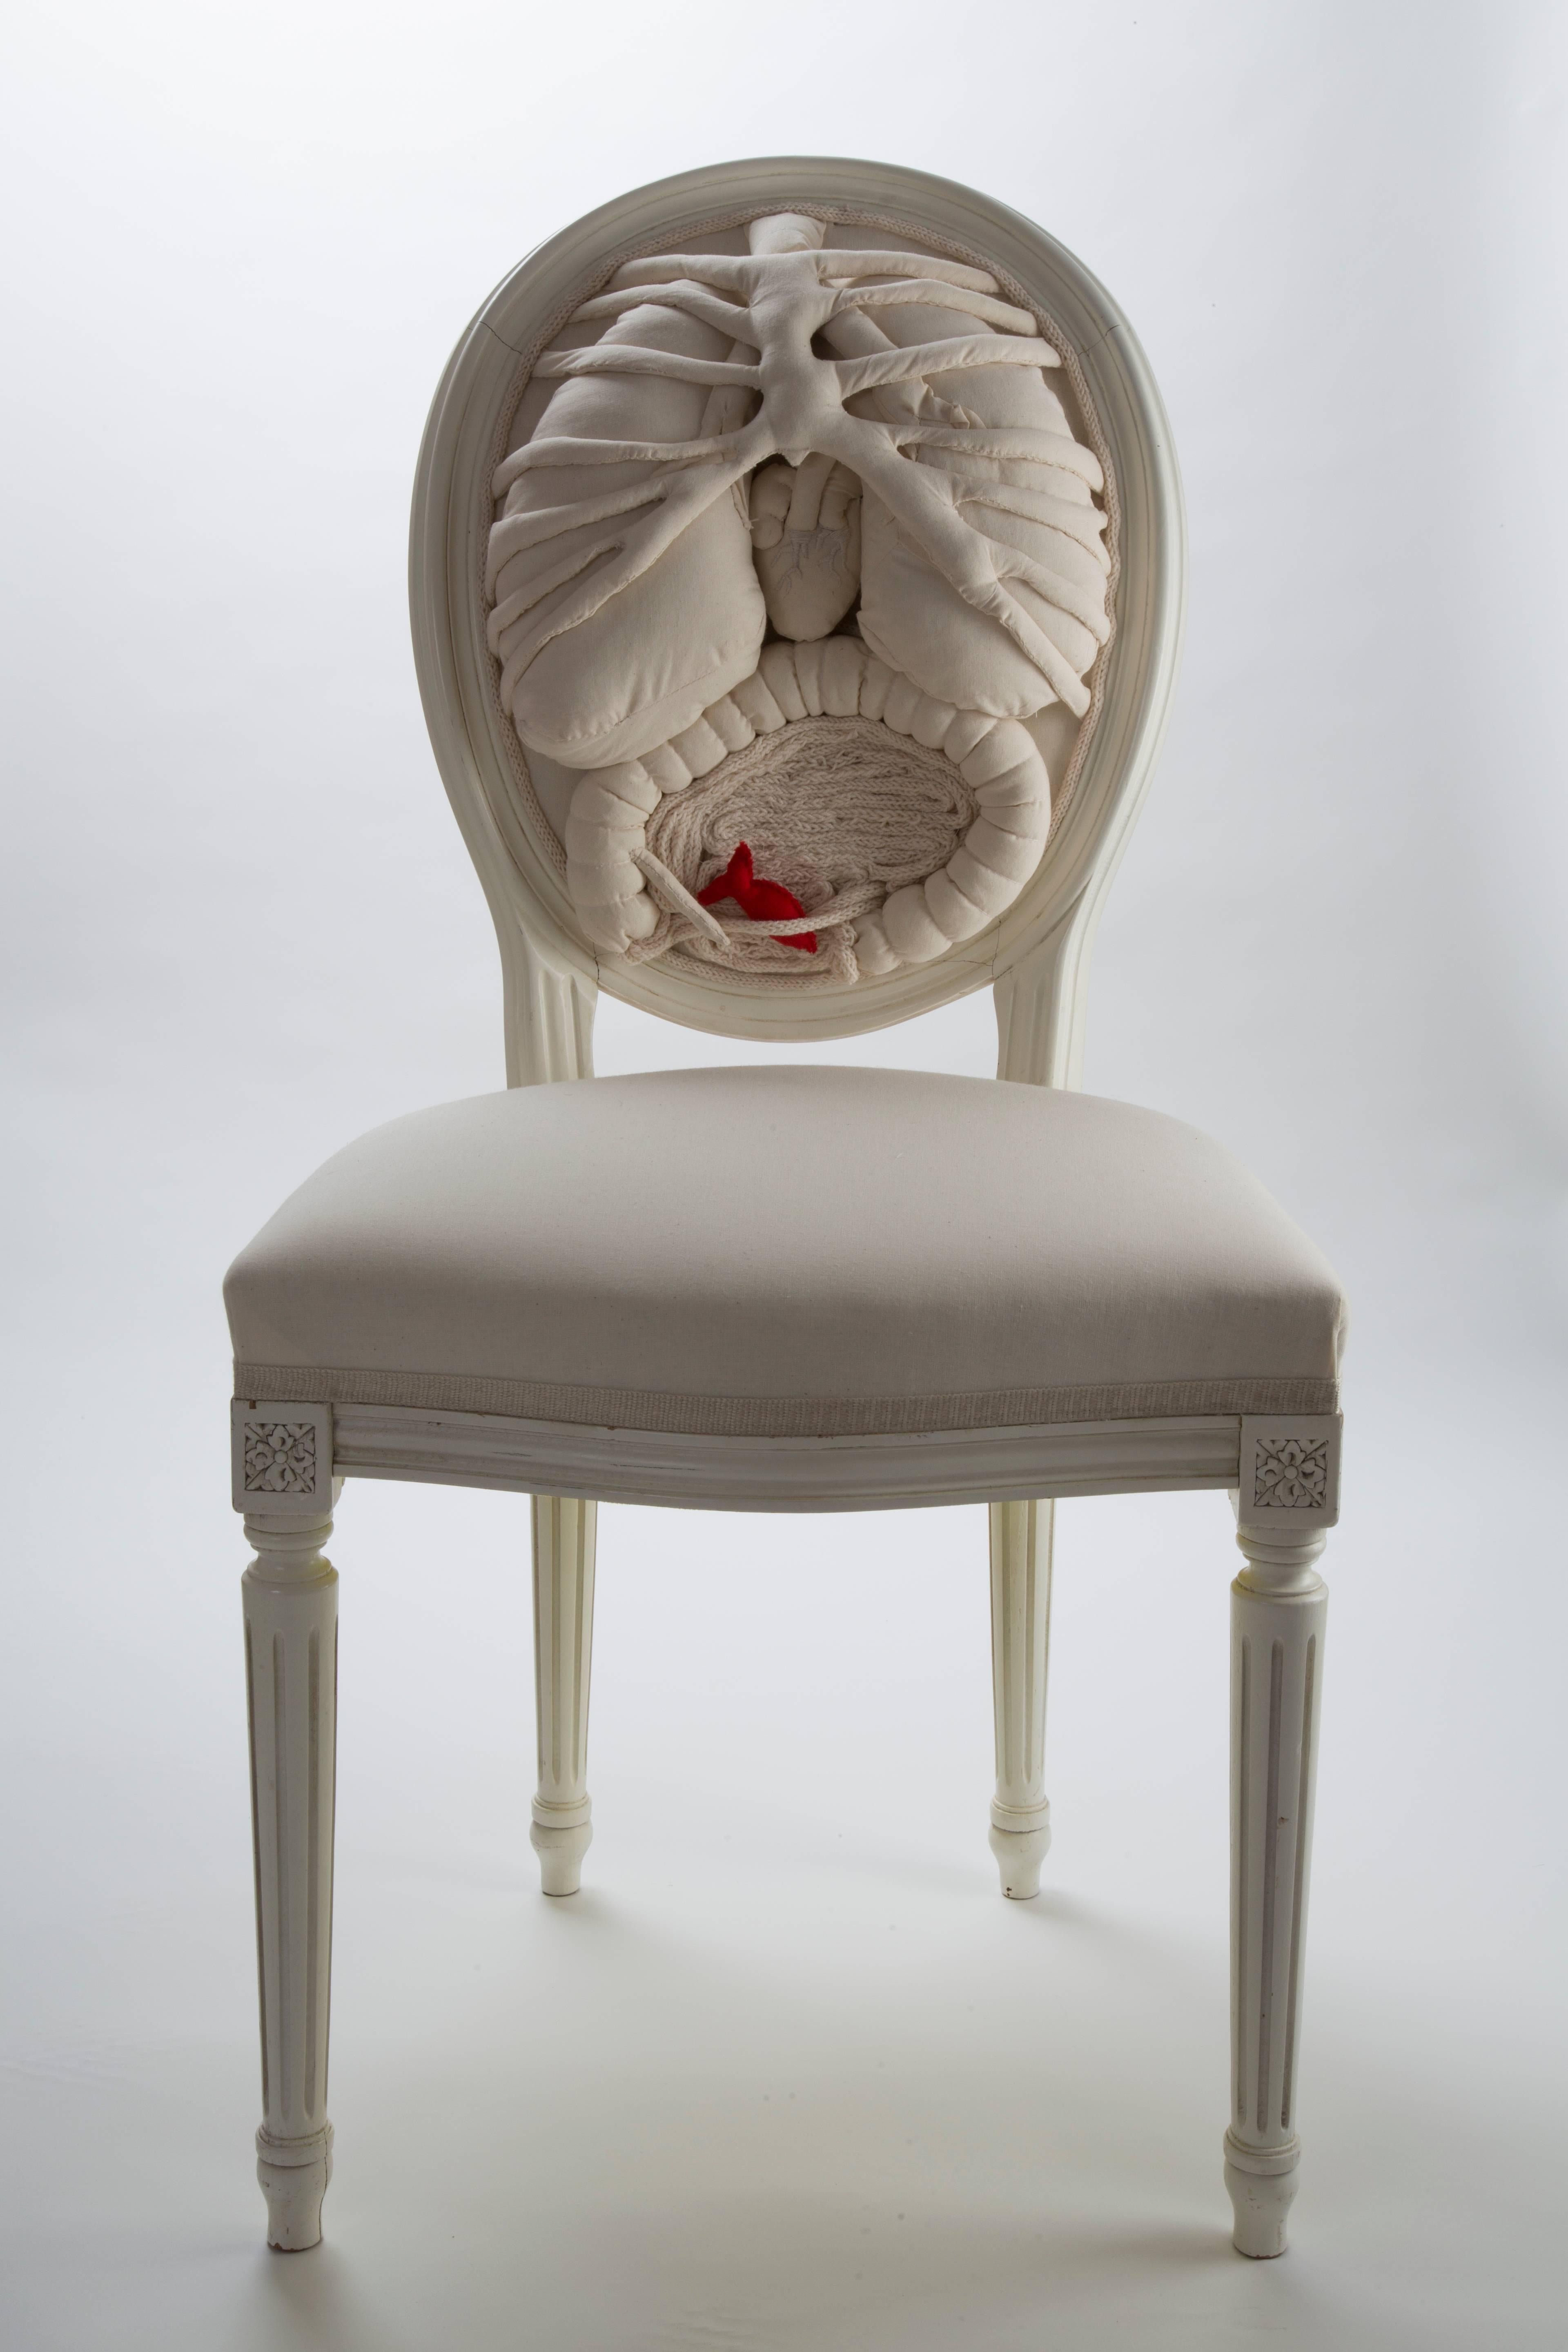 Incroyable chaise blanche unique en son genre
par un artiste français.
Brodé à la main dans une chaise blanche de style Louis XVI en bois de hêtre.
Ces œuvres d'art sont pleines de poésie, de messages cachés et de créativité. 



Dimensions